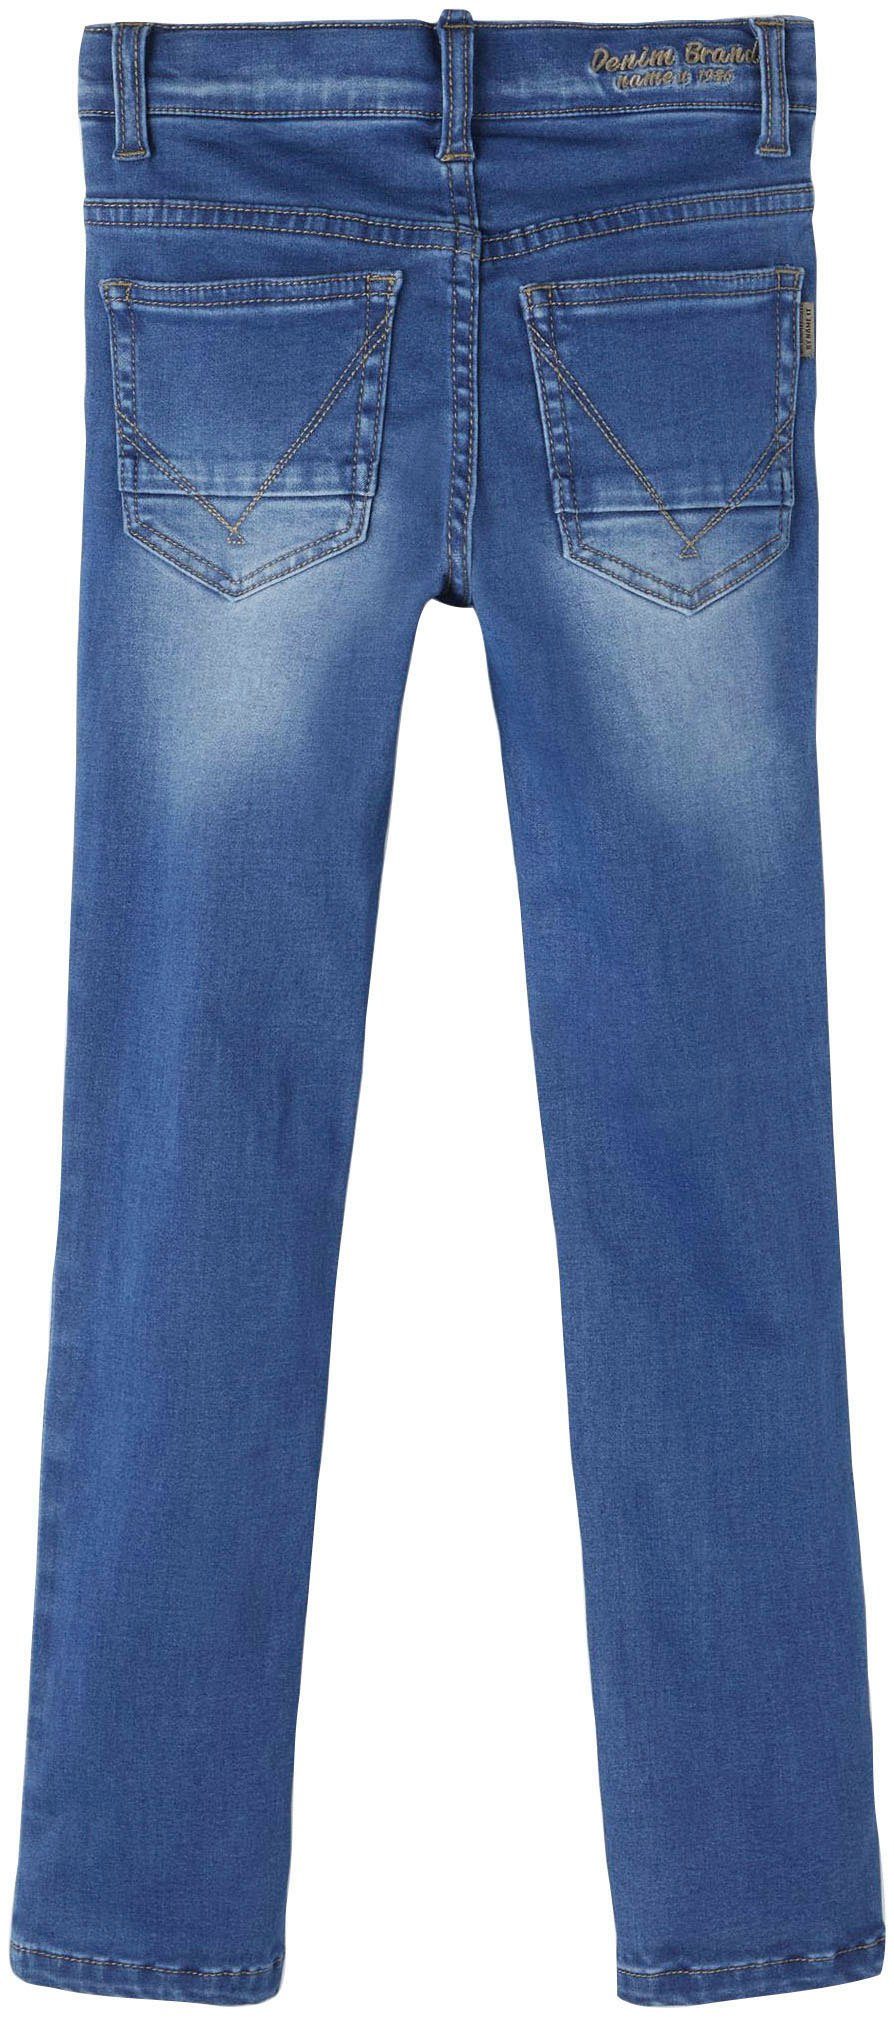 It Stretch-Jeans Name denim blue medium